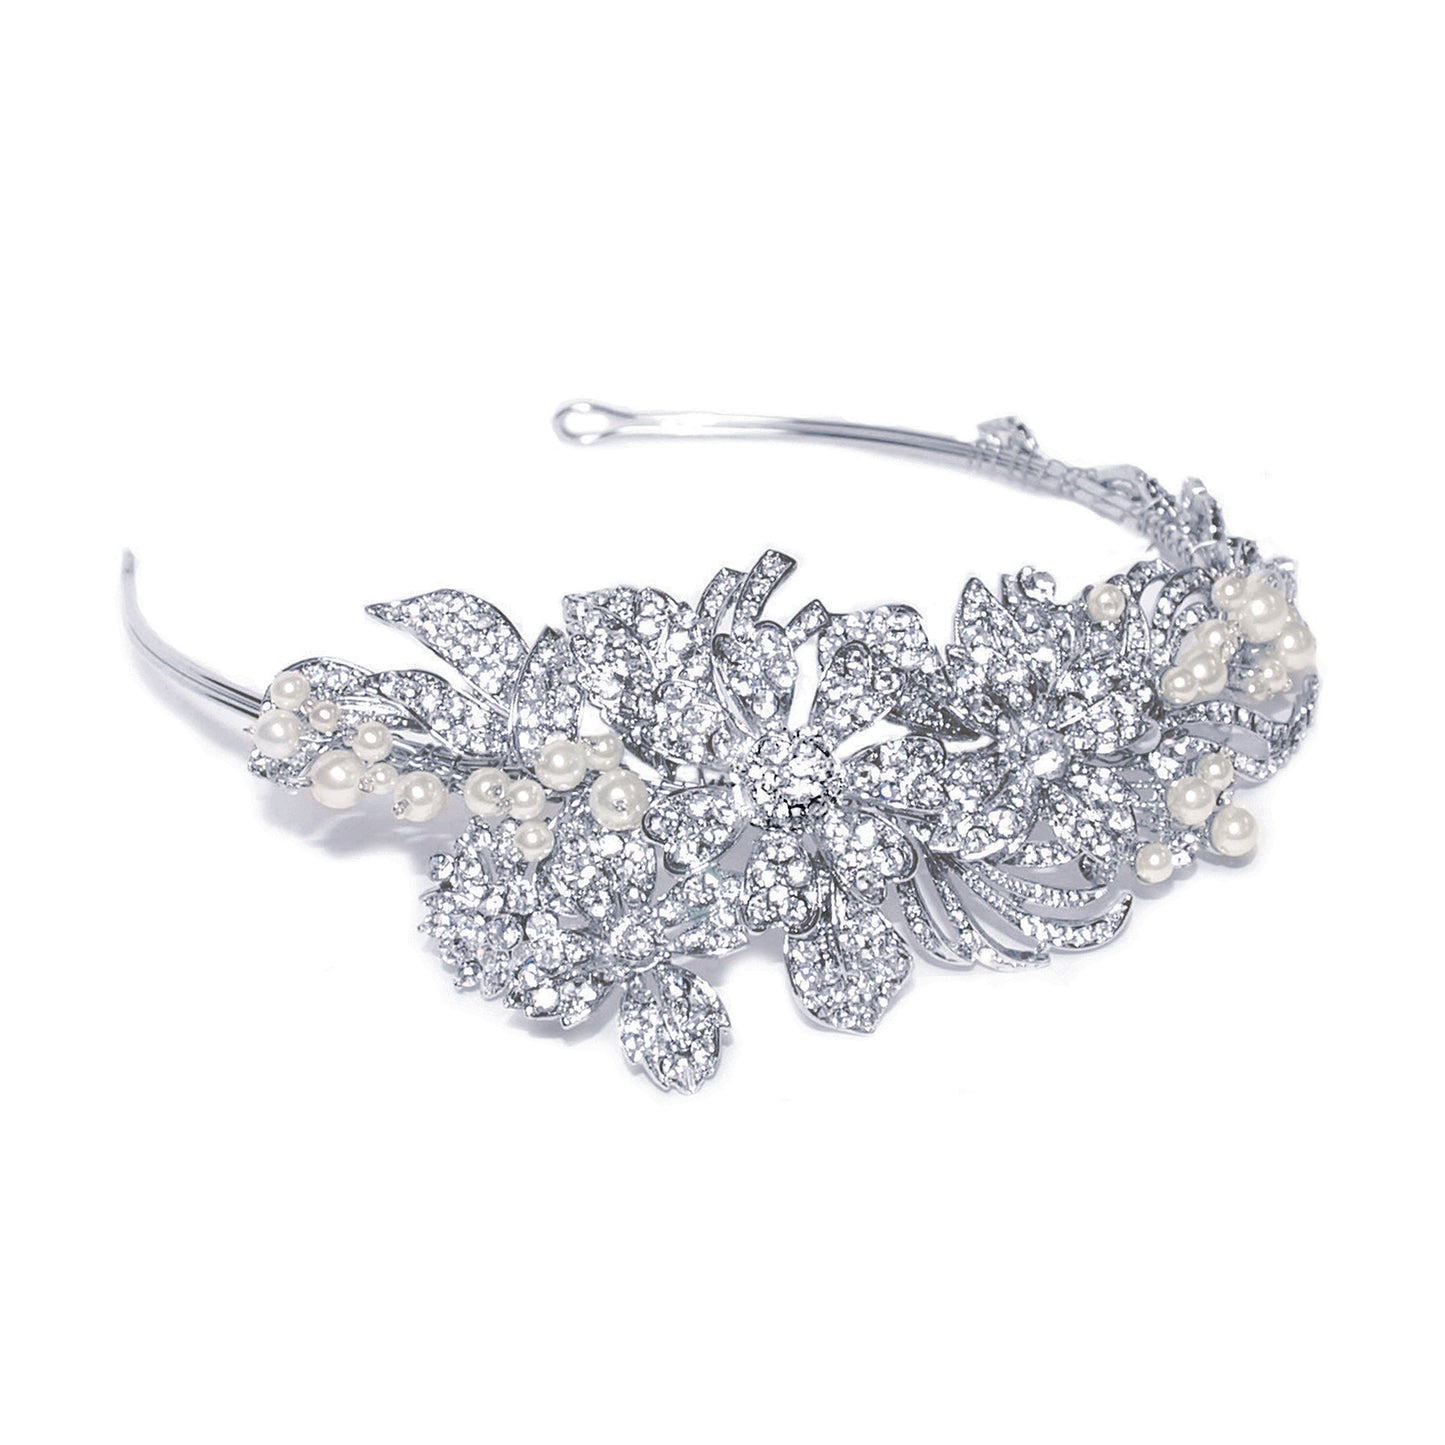 Melanie - Rhodium Crystal and Pearl Flower Blossom Headpiece